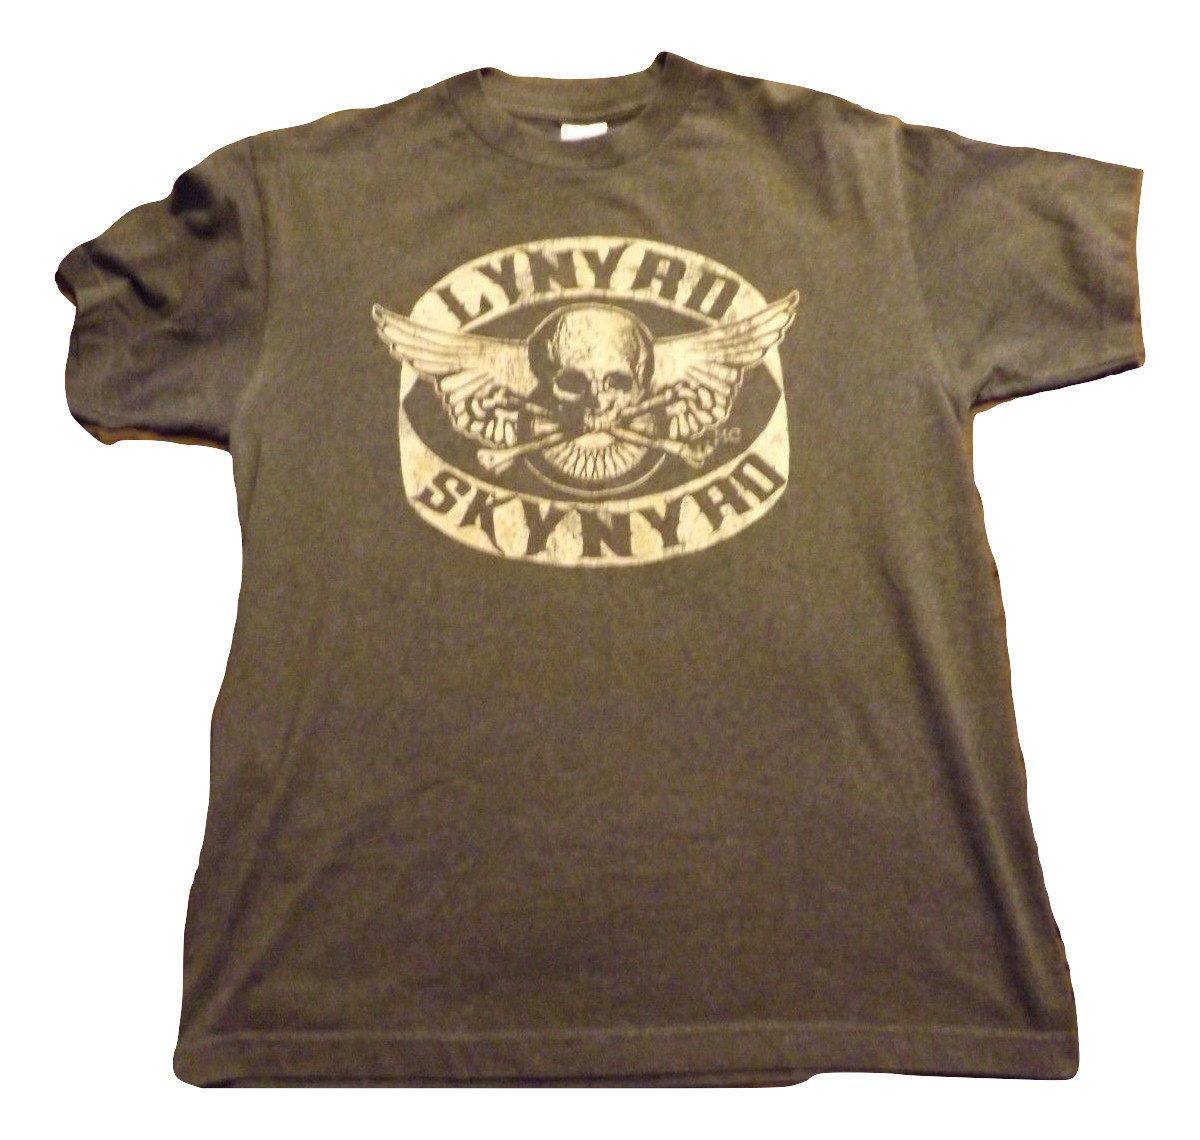 t-shirt, lynyrd skynyrd, skull and cross bones, wings, motorcycle wheel ...